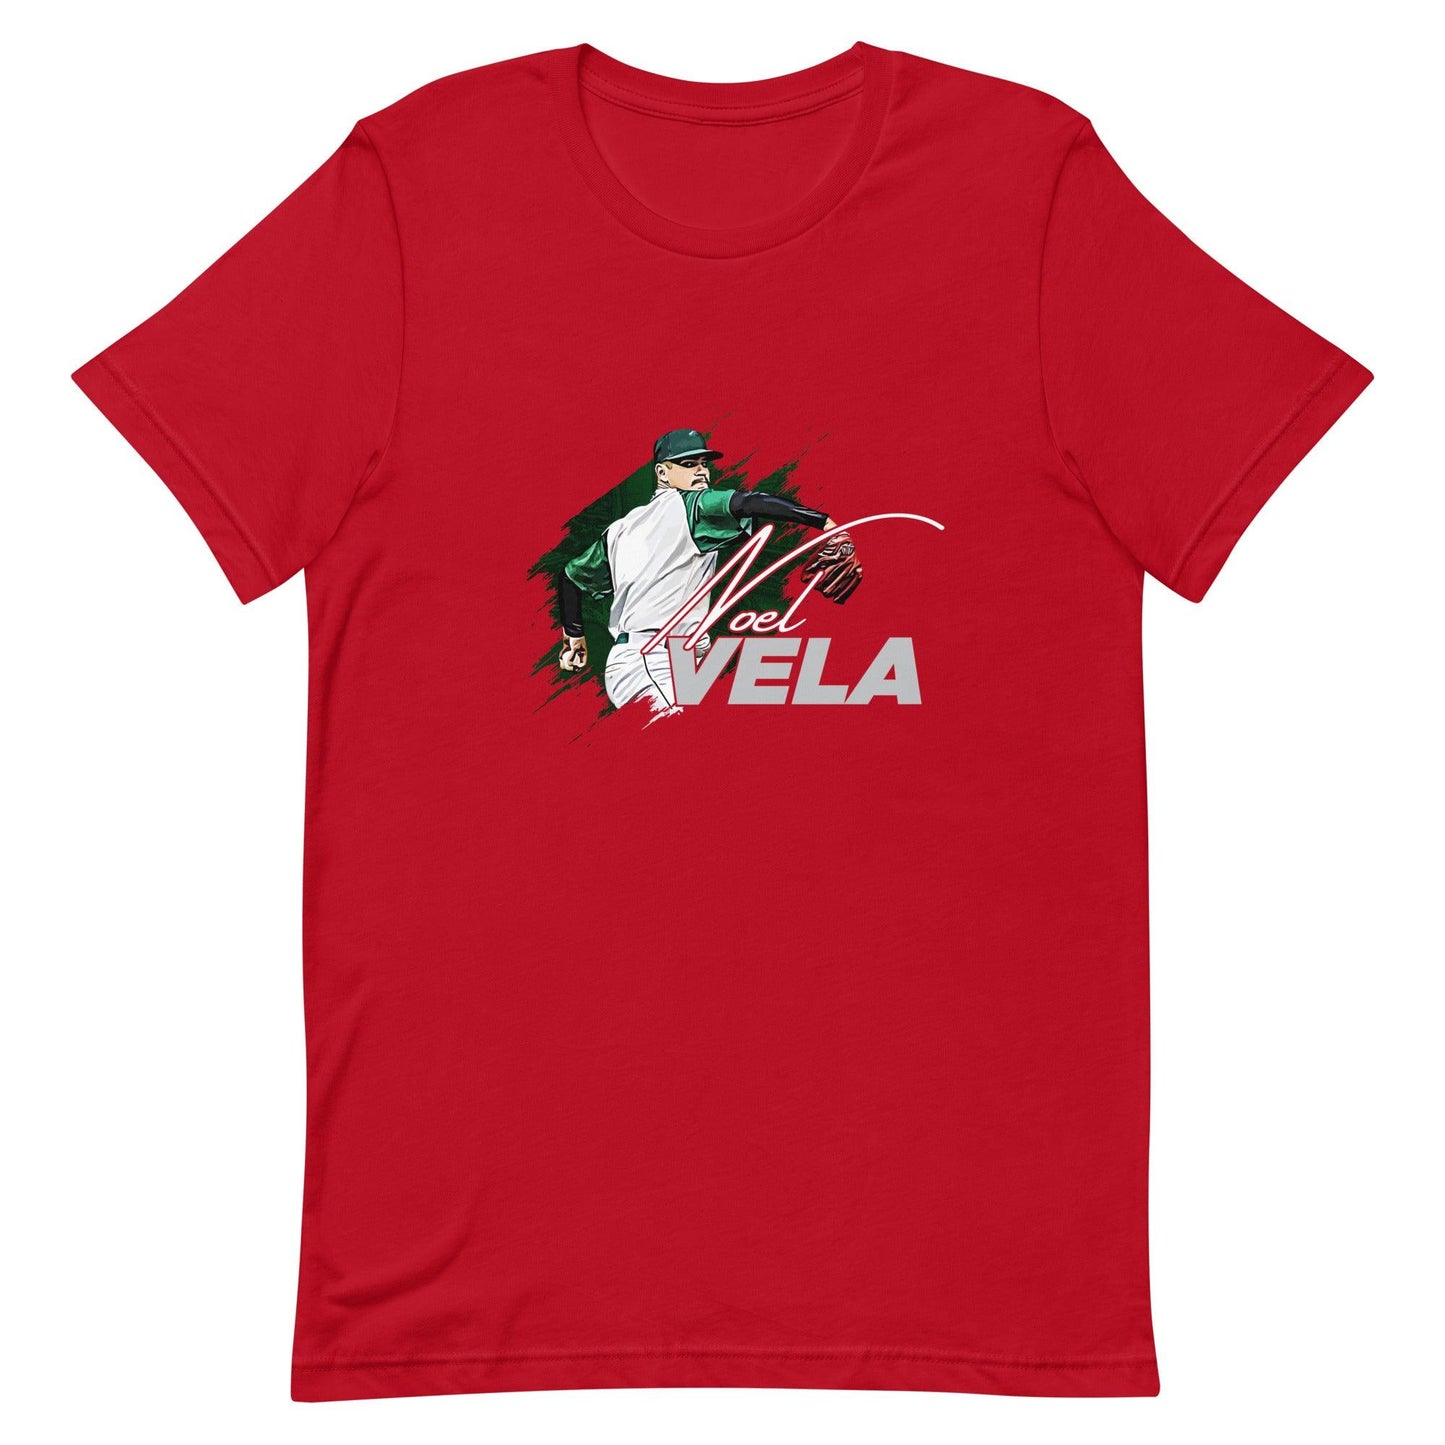 Noel Vela "Essential' t-shirt - Fan Arch